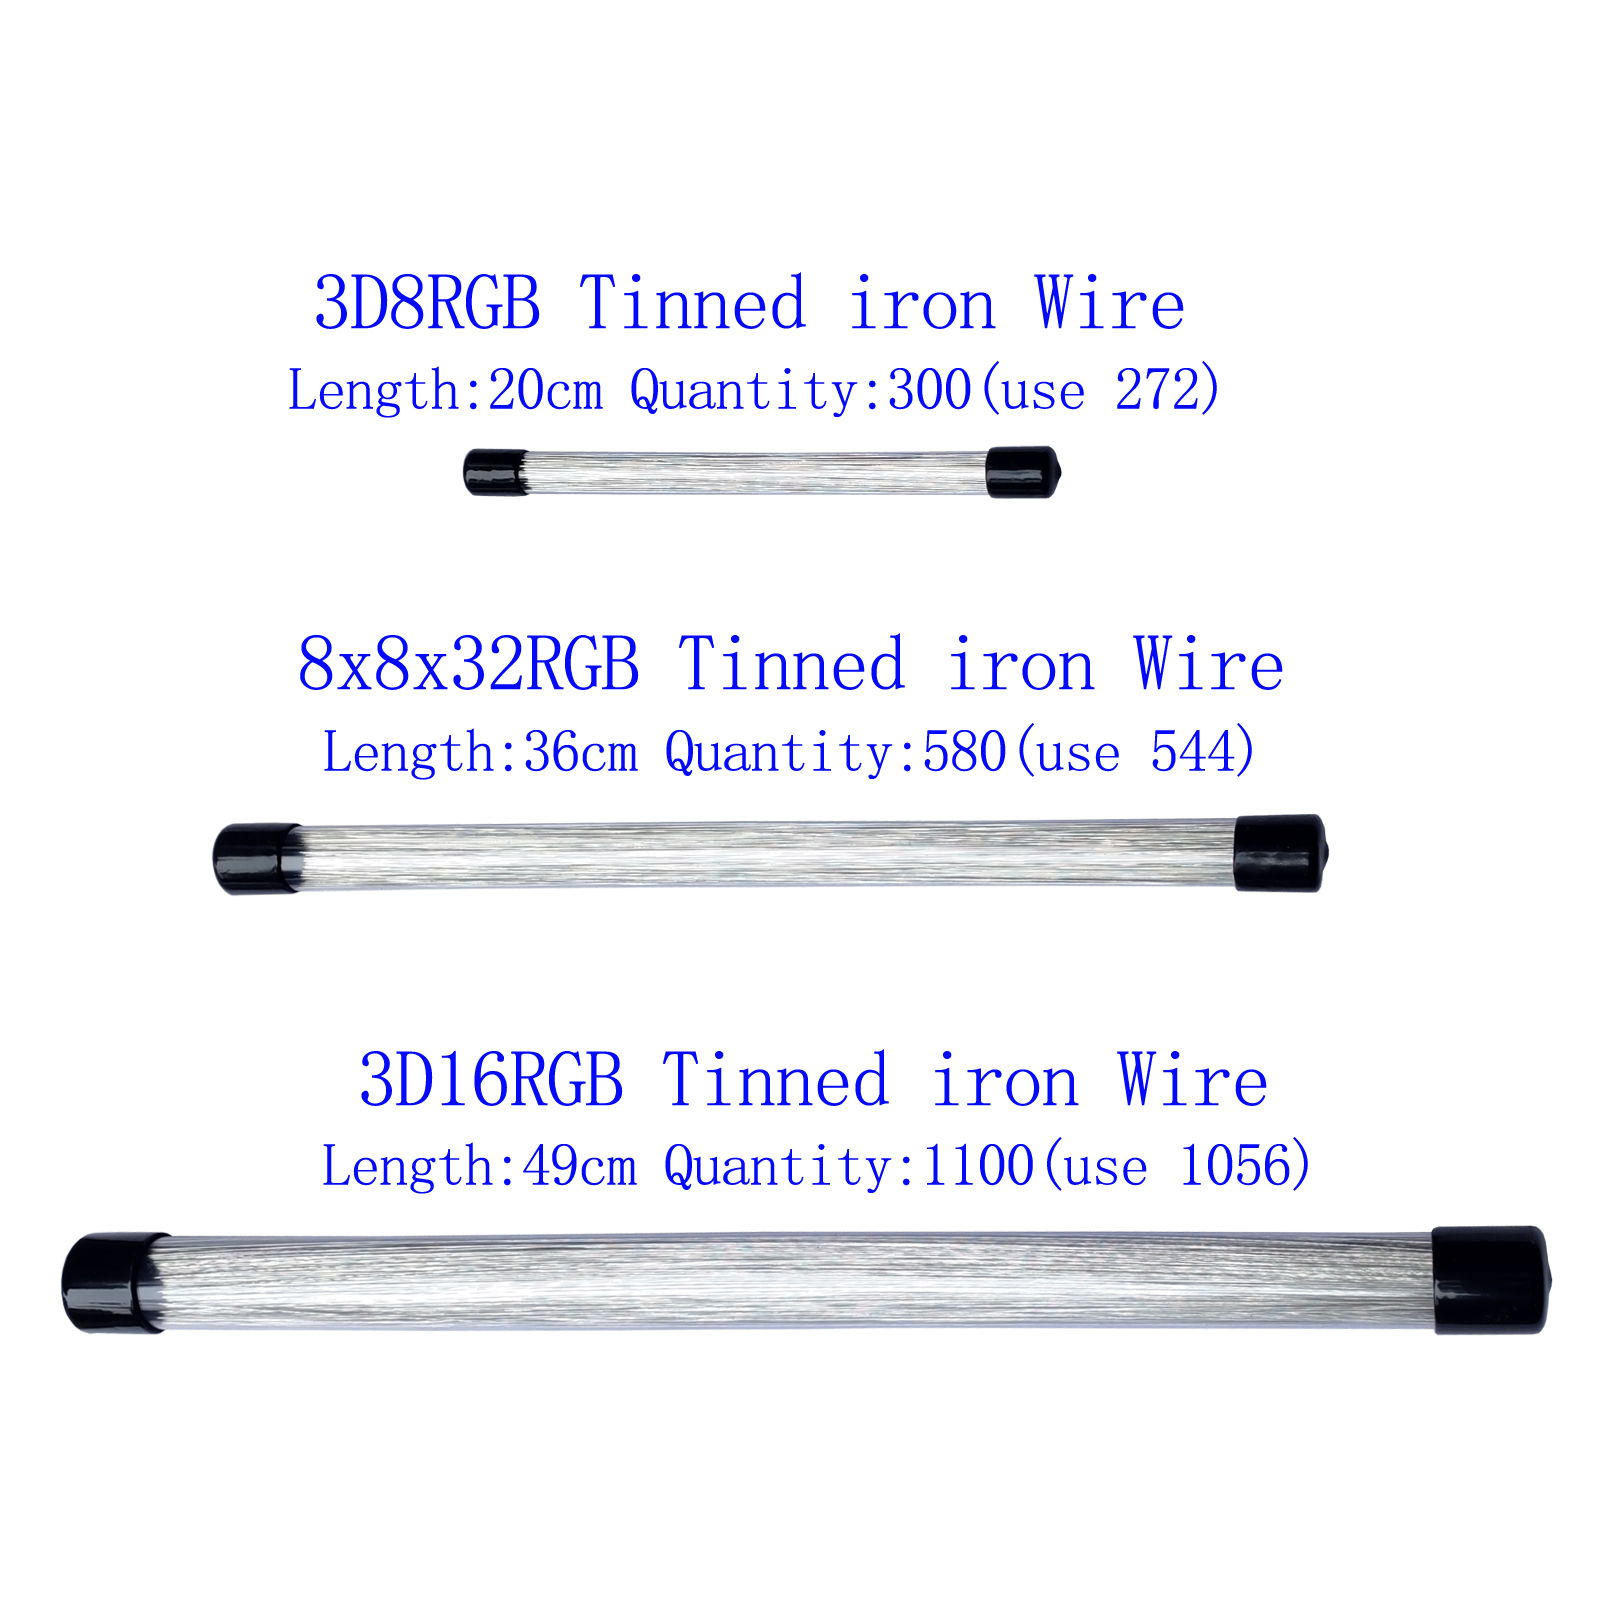 0.5mm diameter tinned iron wire